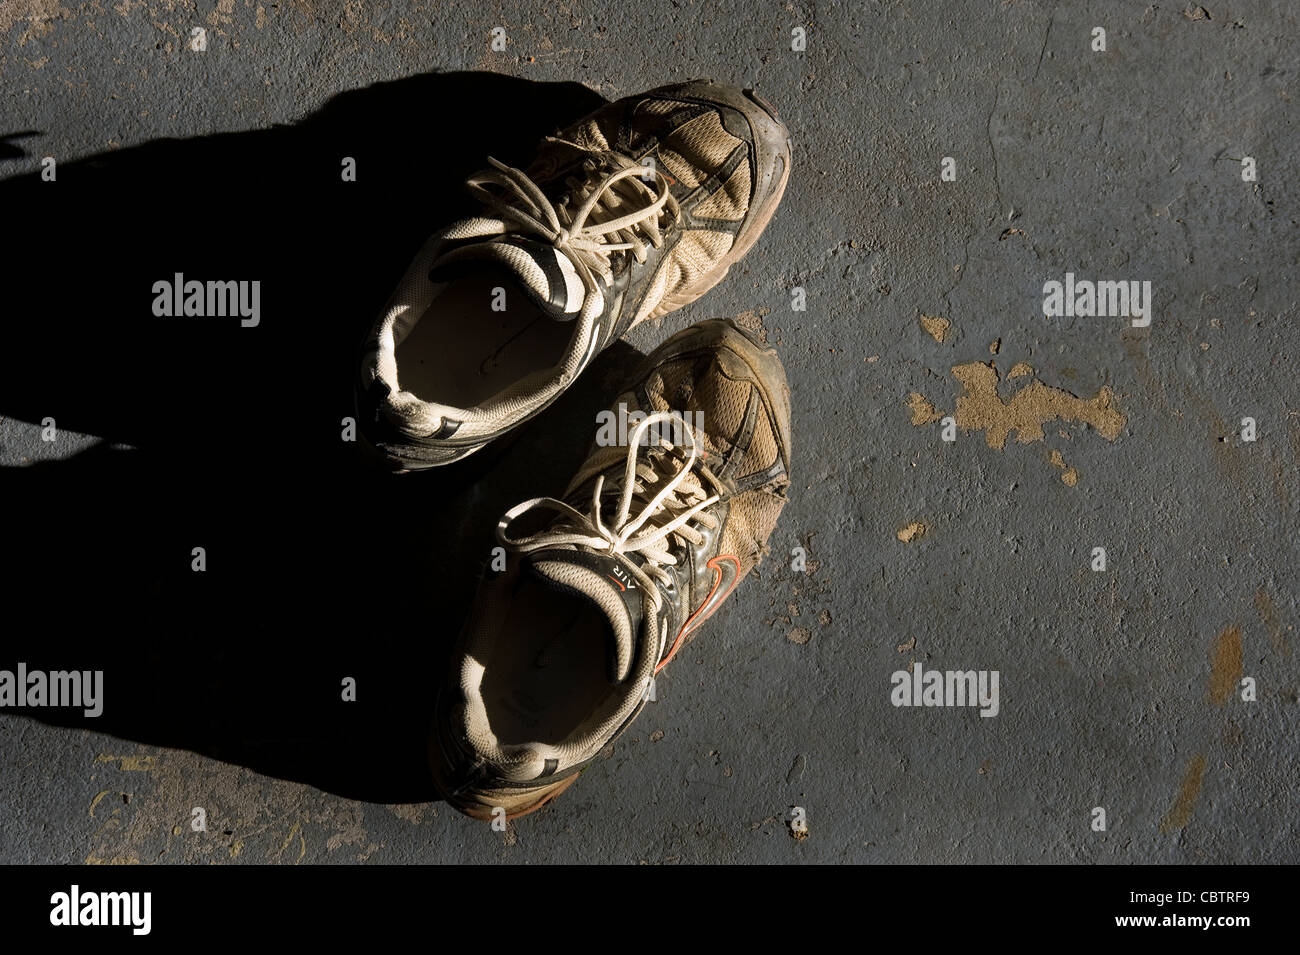 Chaussures Sneakers sale vieux, en plein soleil, un sol en béton Banque D'Images